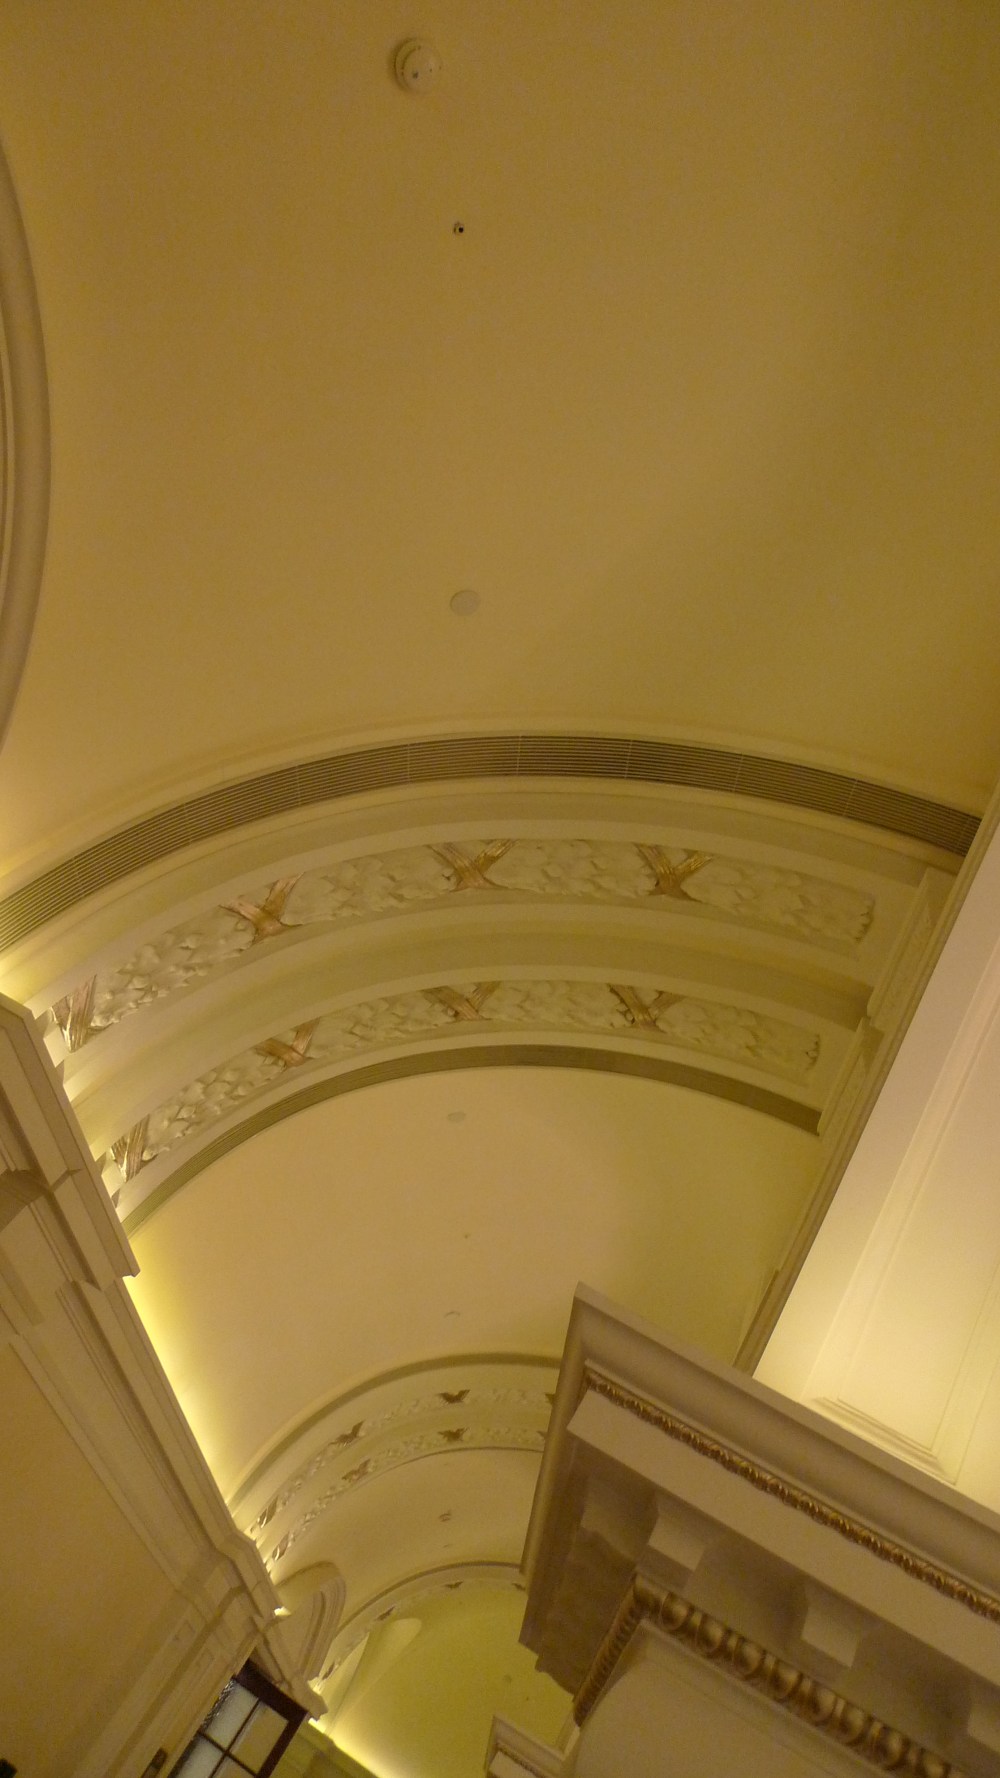 上海华尔道夫酒店(The Waldorf Astoria OnTheBund)(HBA)10.9第10页更新_L1050005.JPG